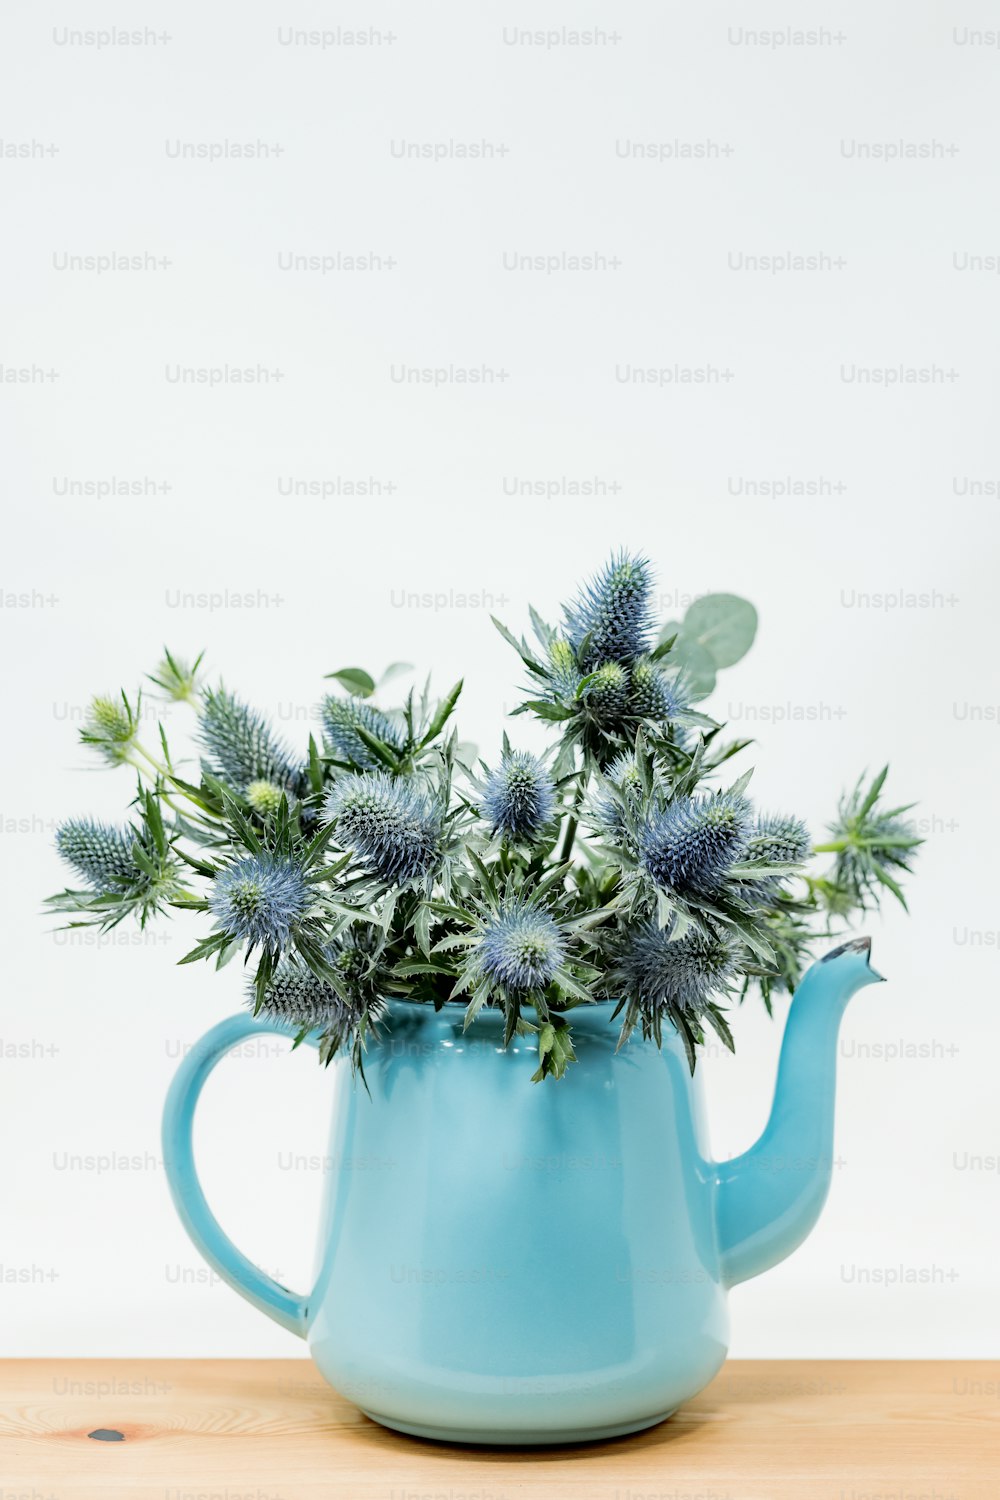 Tetera ceramica flores azules